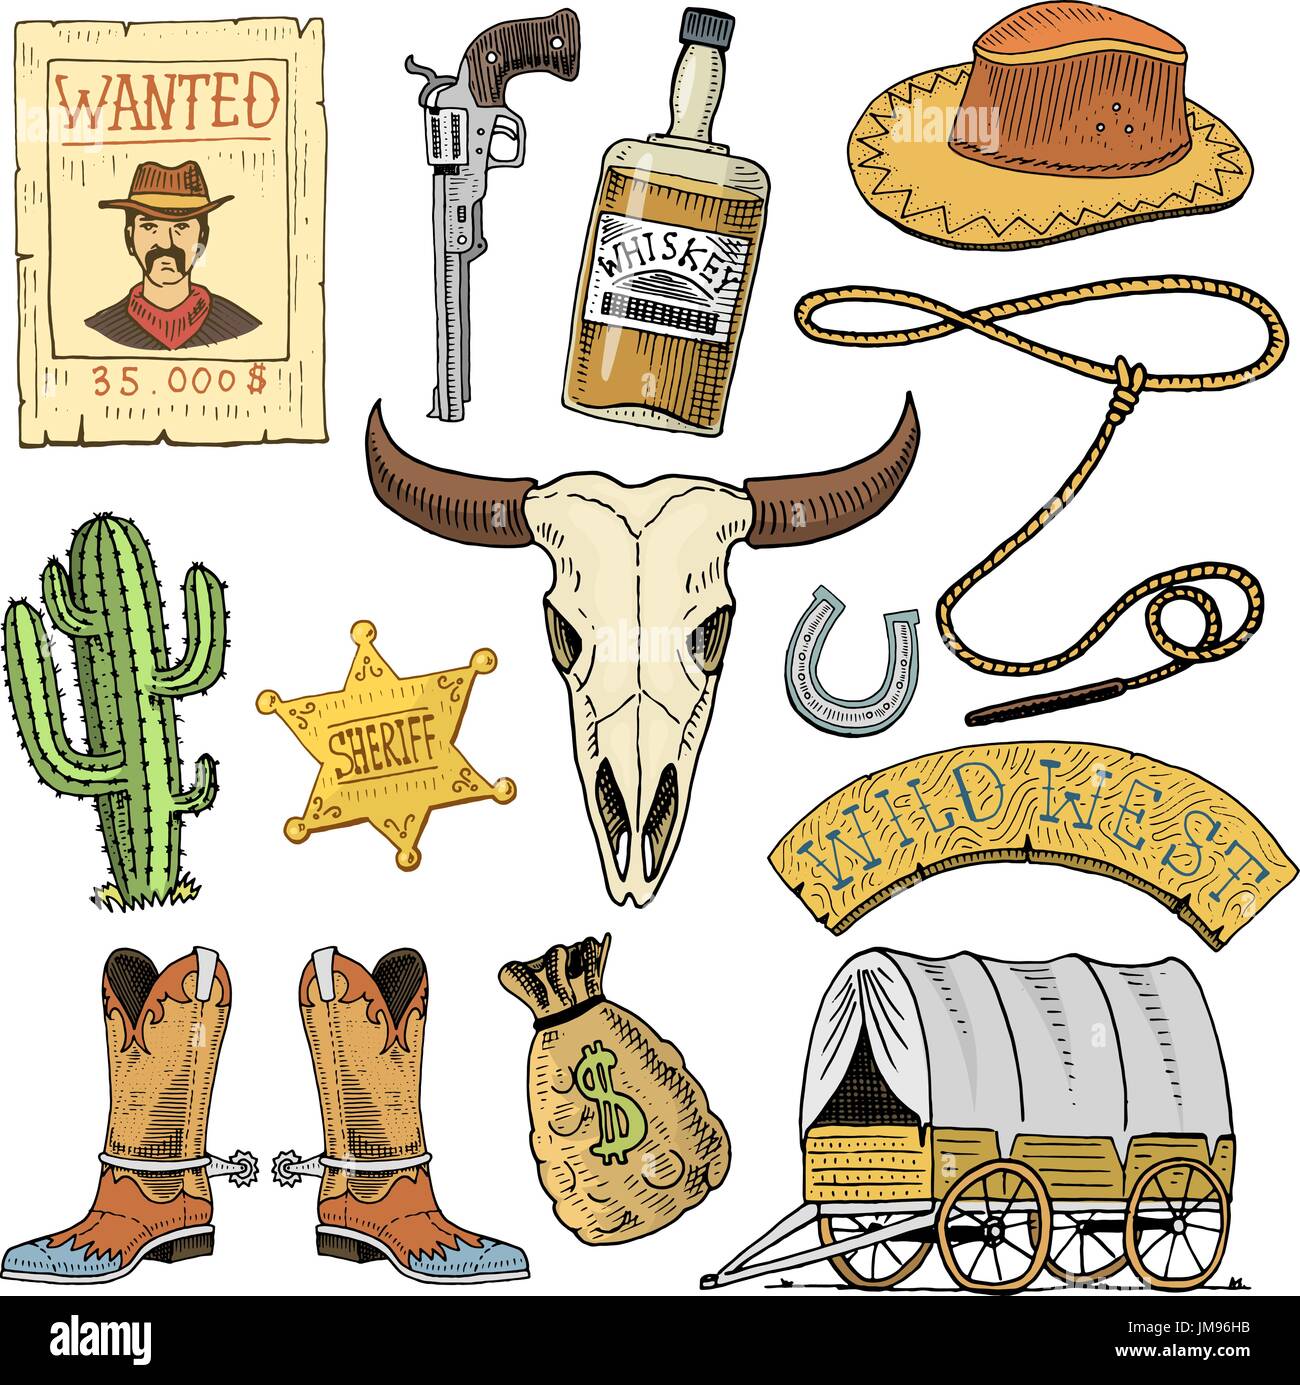 Salvaje Oeste, show de rodeo, vaquero o indios con lazo. sombrero y pistola, cactus con estrella de sheriff y bisontes, arrancar con la herradura y quería póster. grabado dibujado a mano en el viejo sketch o y estilo vintage. Ilustración del Vector